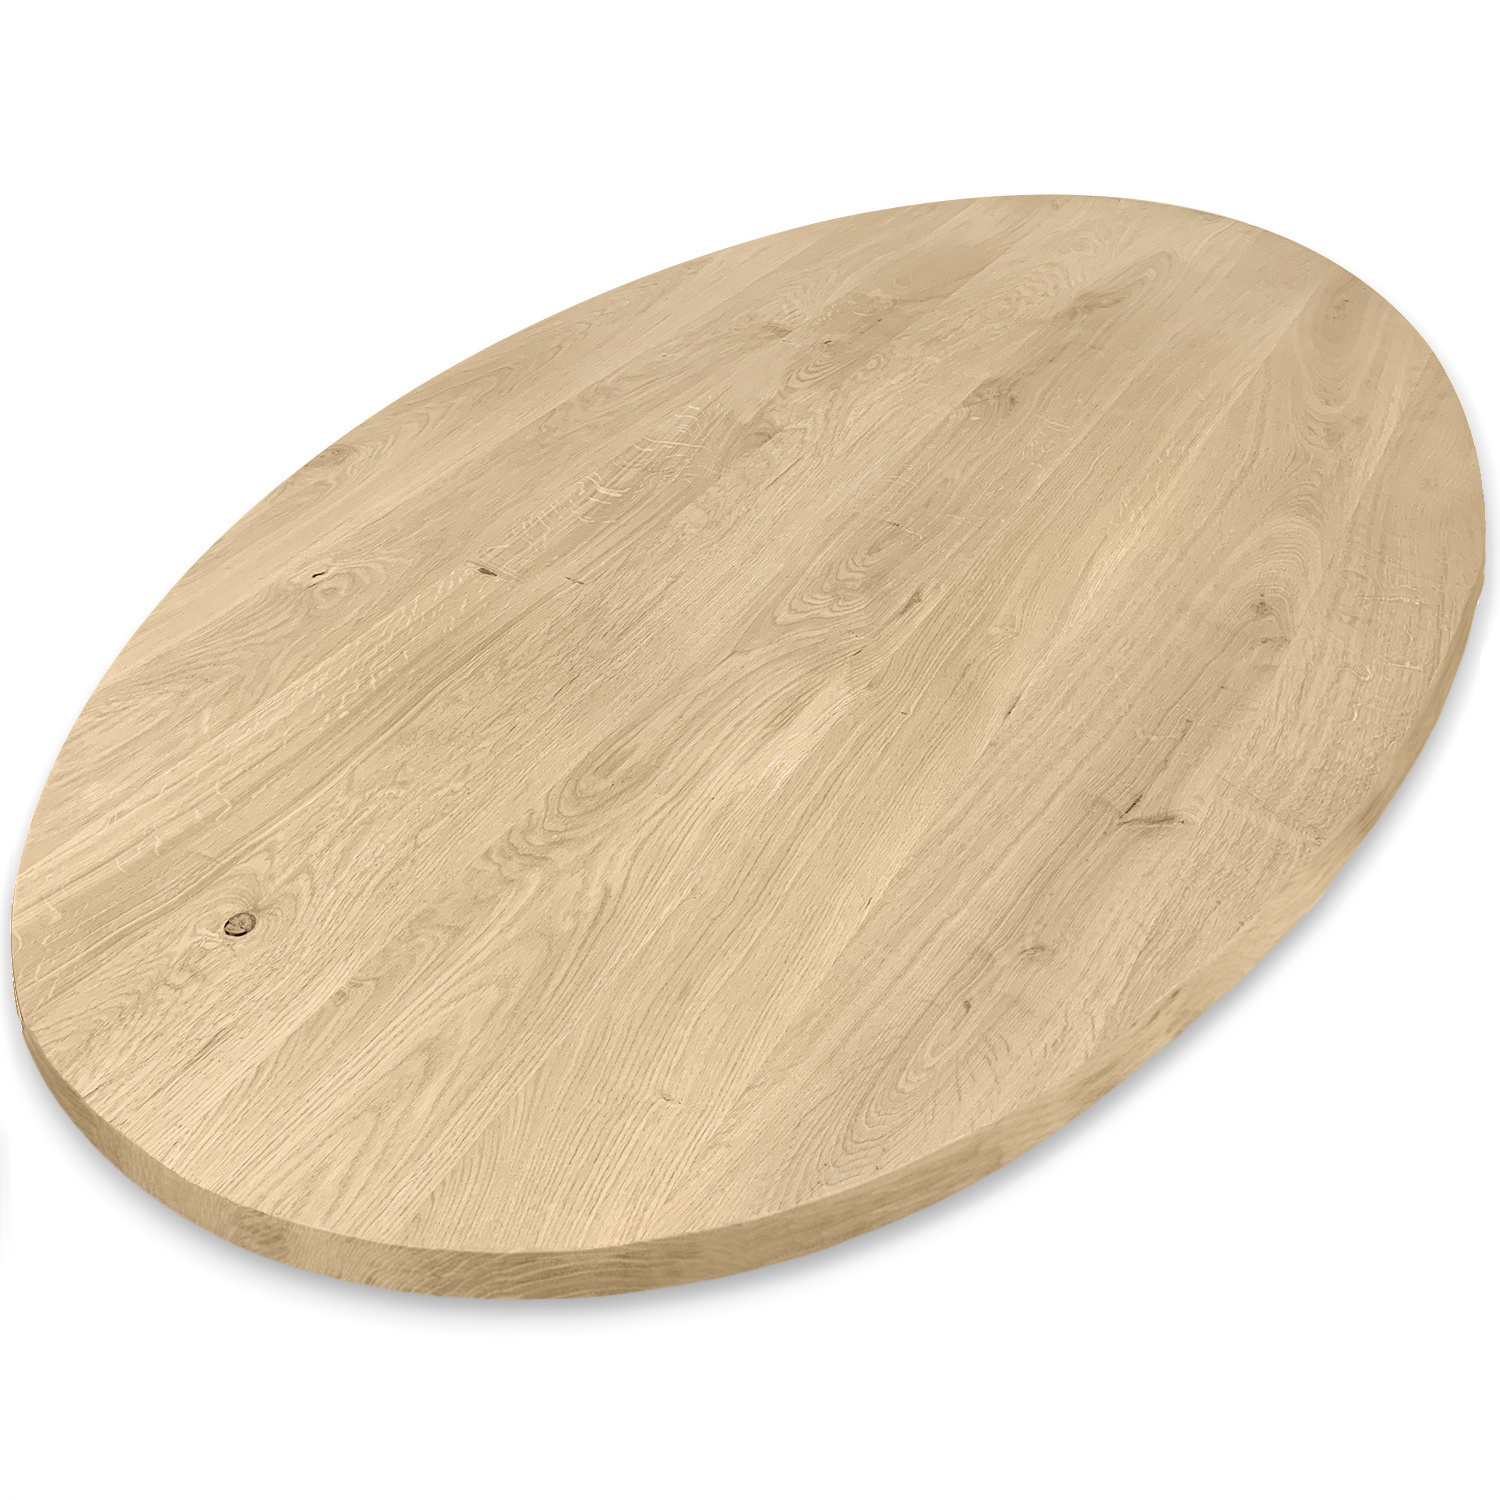  Tischplatte Eiche oval - 2,7 cm dick (1-Schicht) - Breite Lamellen (10 - 12 cm breit) - Eichenholz rustikal - Tischplatte ovale / ellipse Eiche - verleimt & künstlich getrocknet (HF 8-12%) - verschiedene Größen